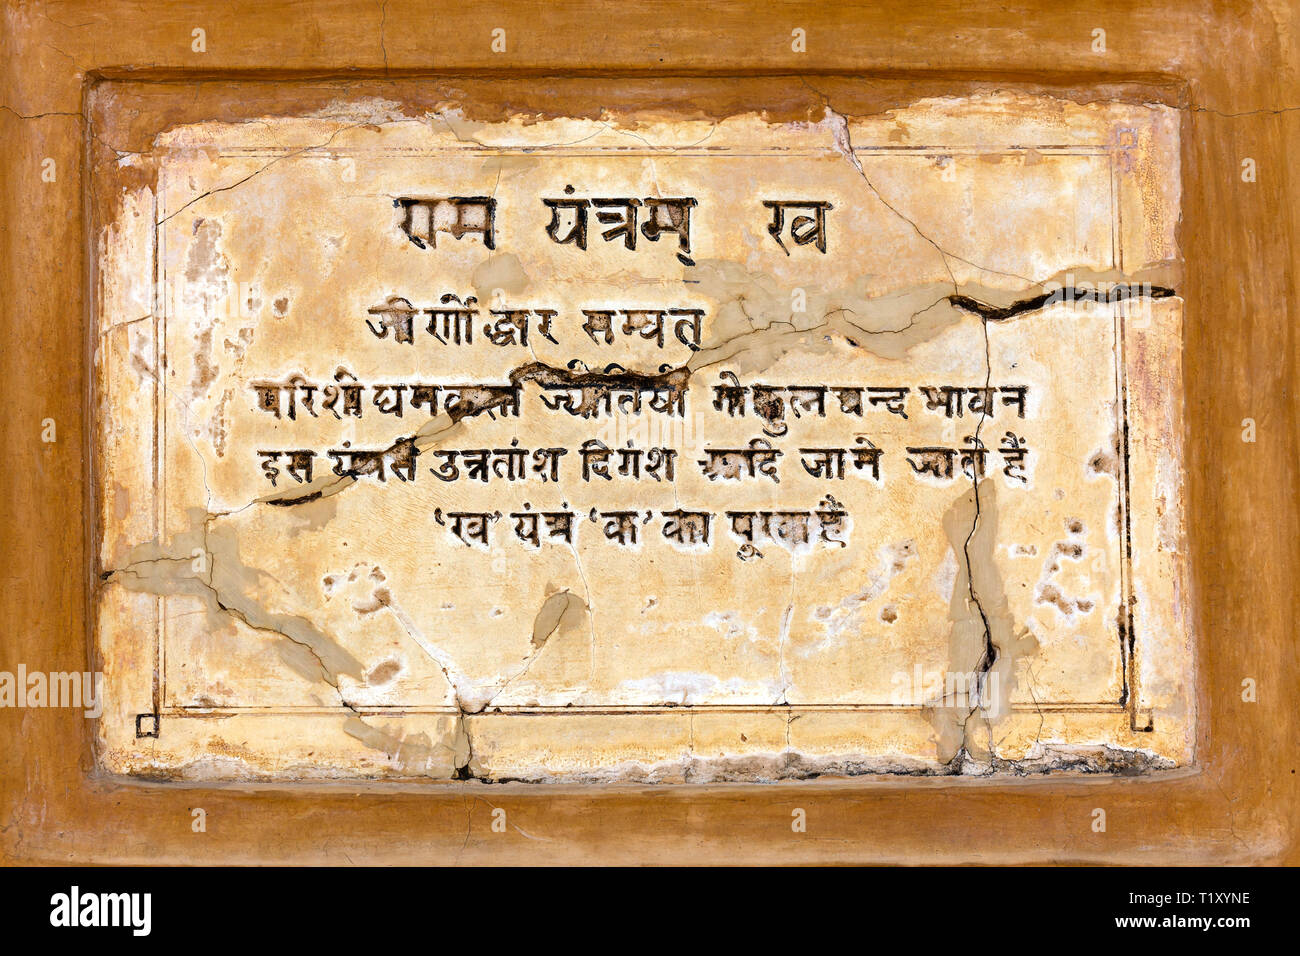 JAIPUR, INDIEN - November 18, 2012: alte Inschrift auf einer Steinmauer in Indien Stockfoto